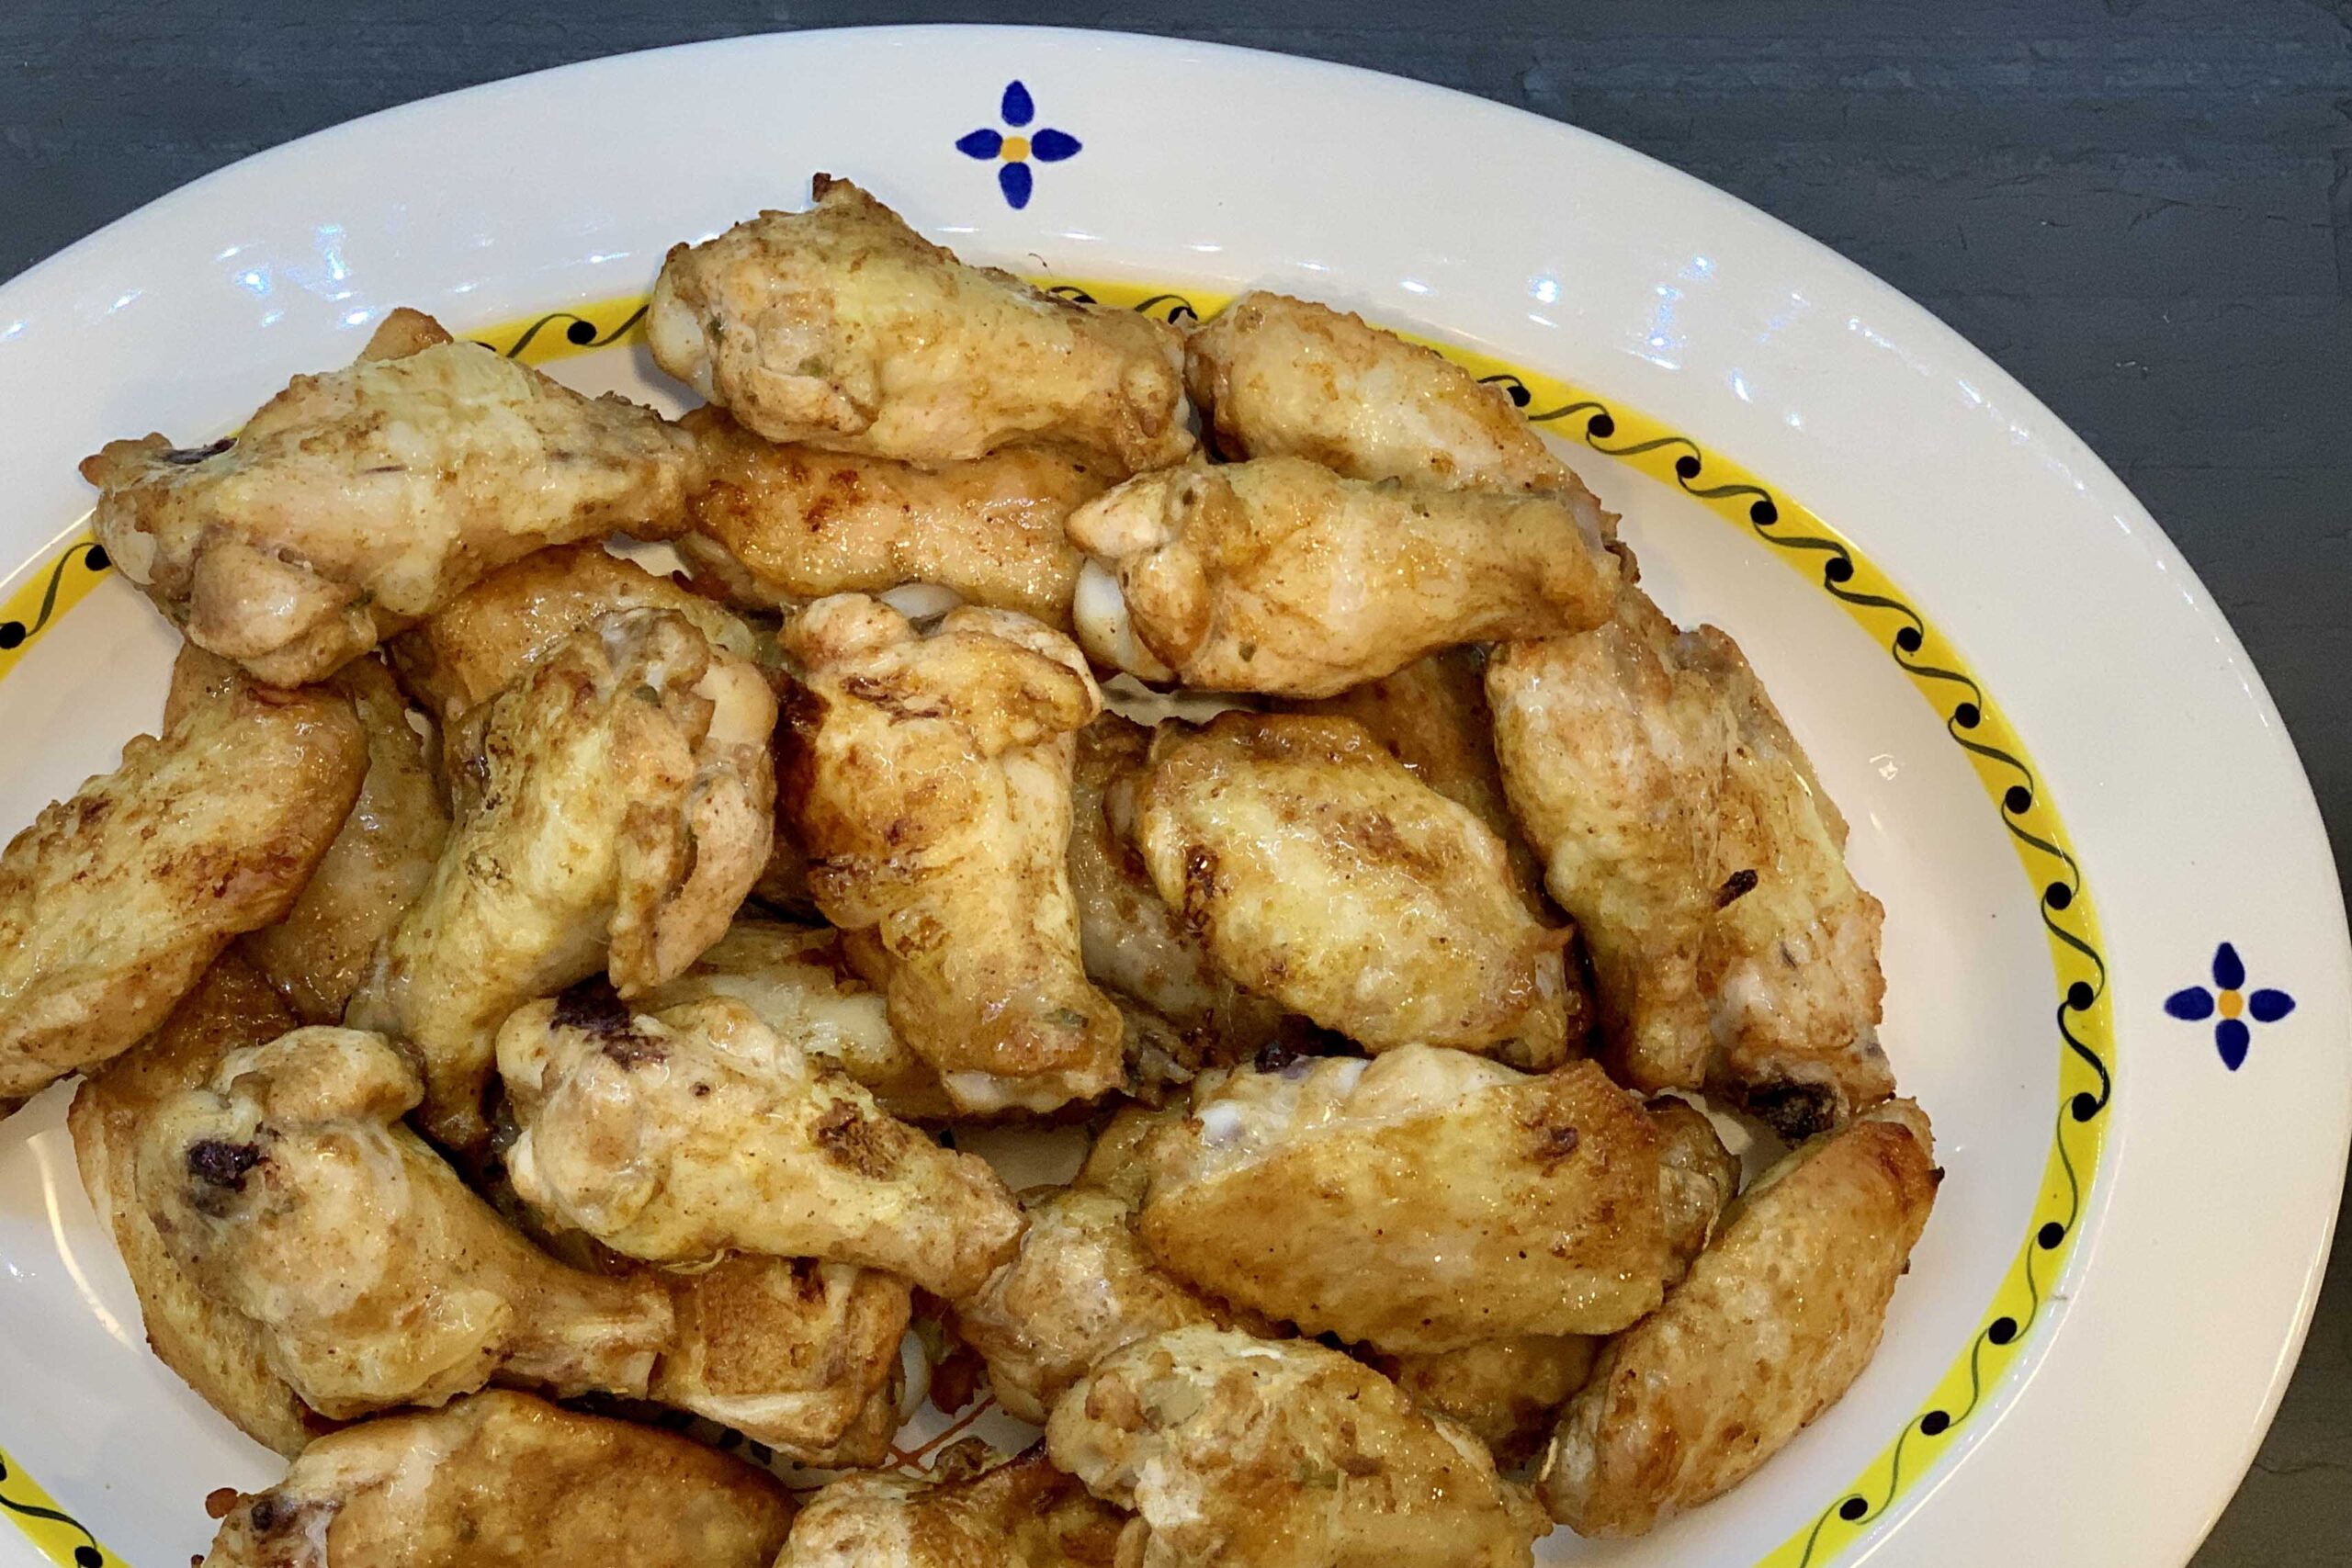 Air Fryer Chicken Wings